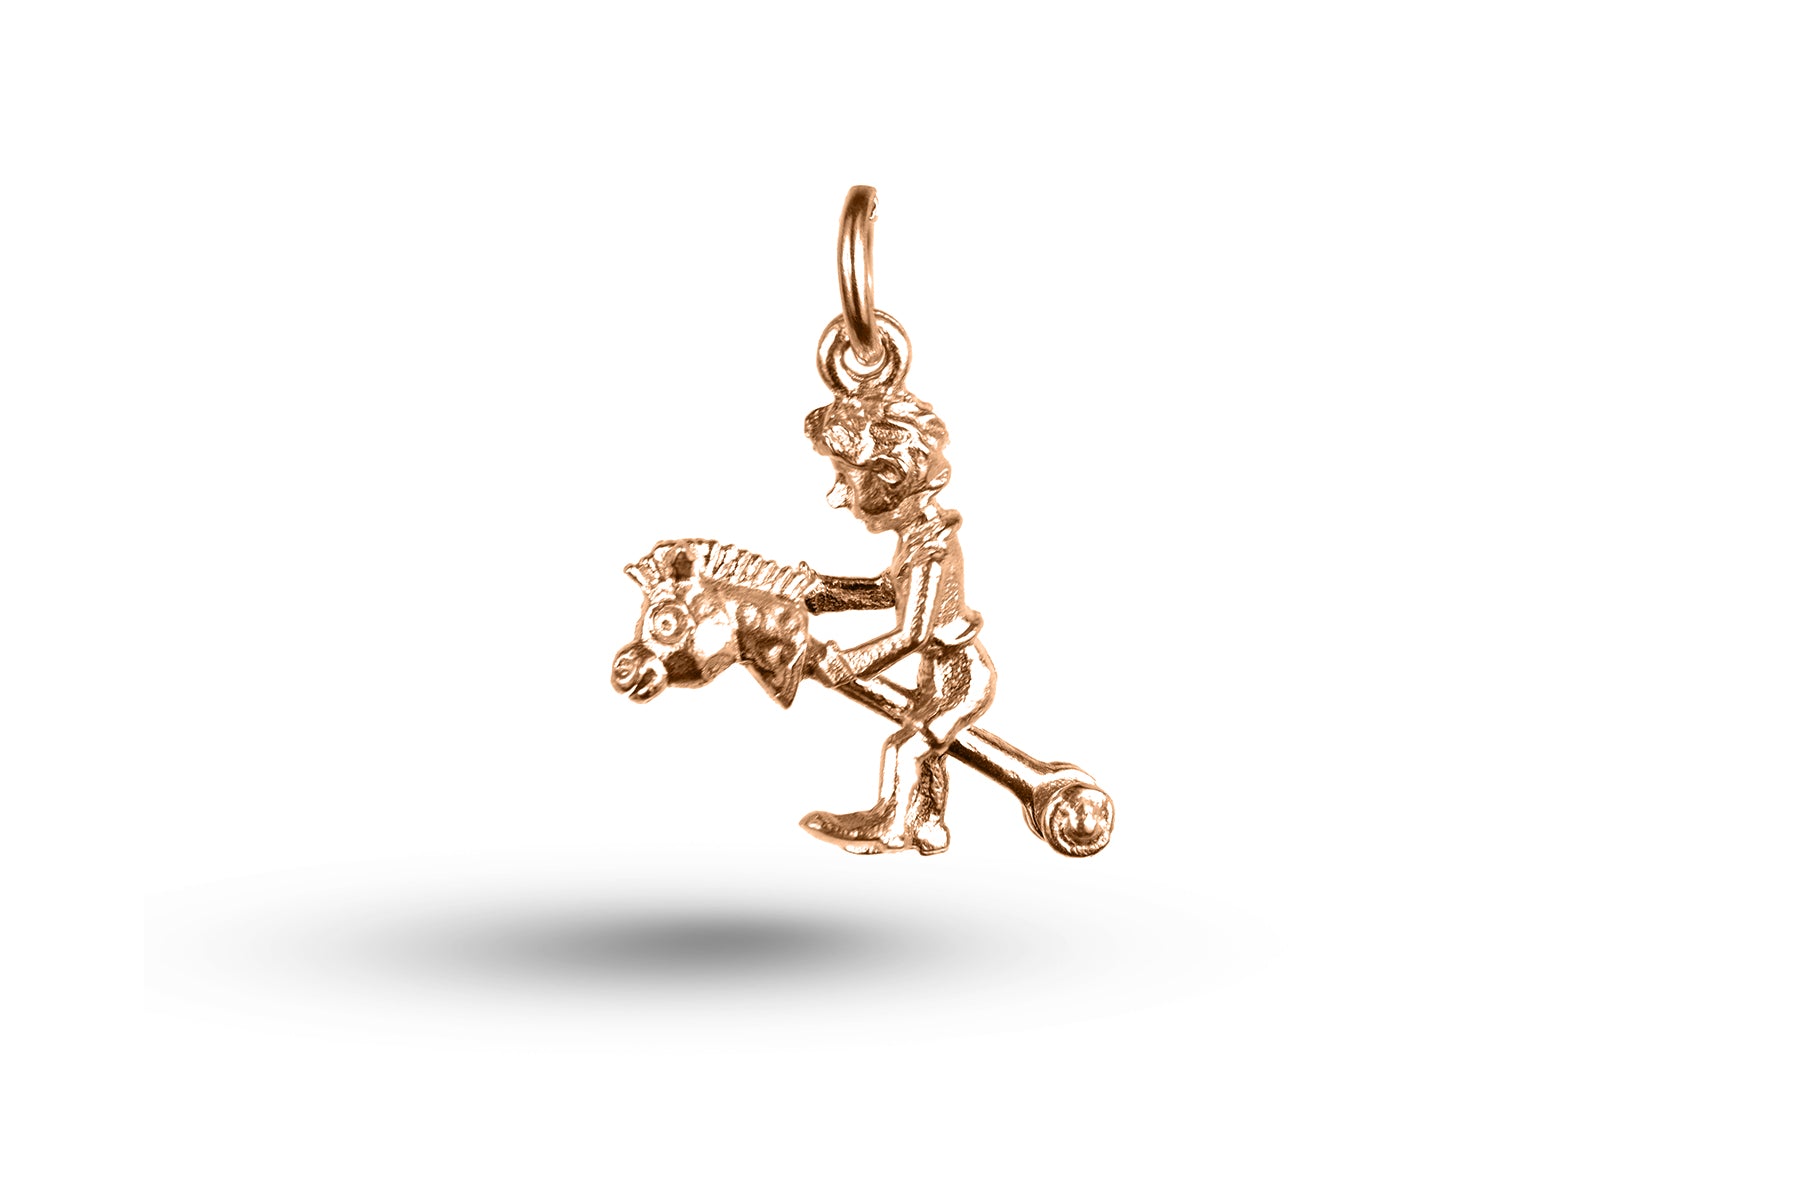 Luxury rose gold Boy on Hobby Horse charm.